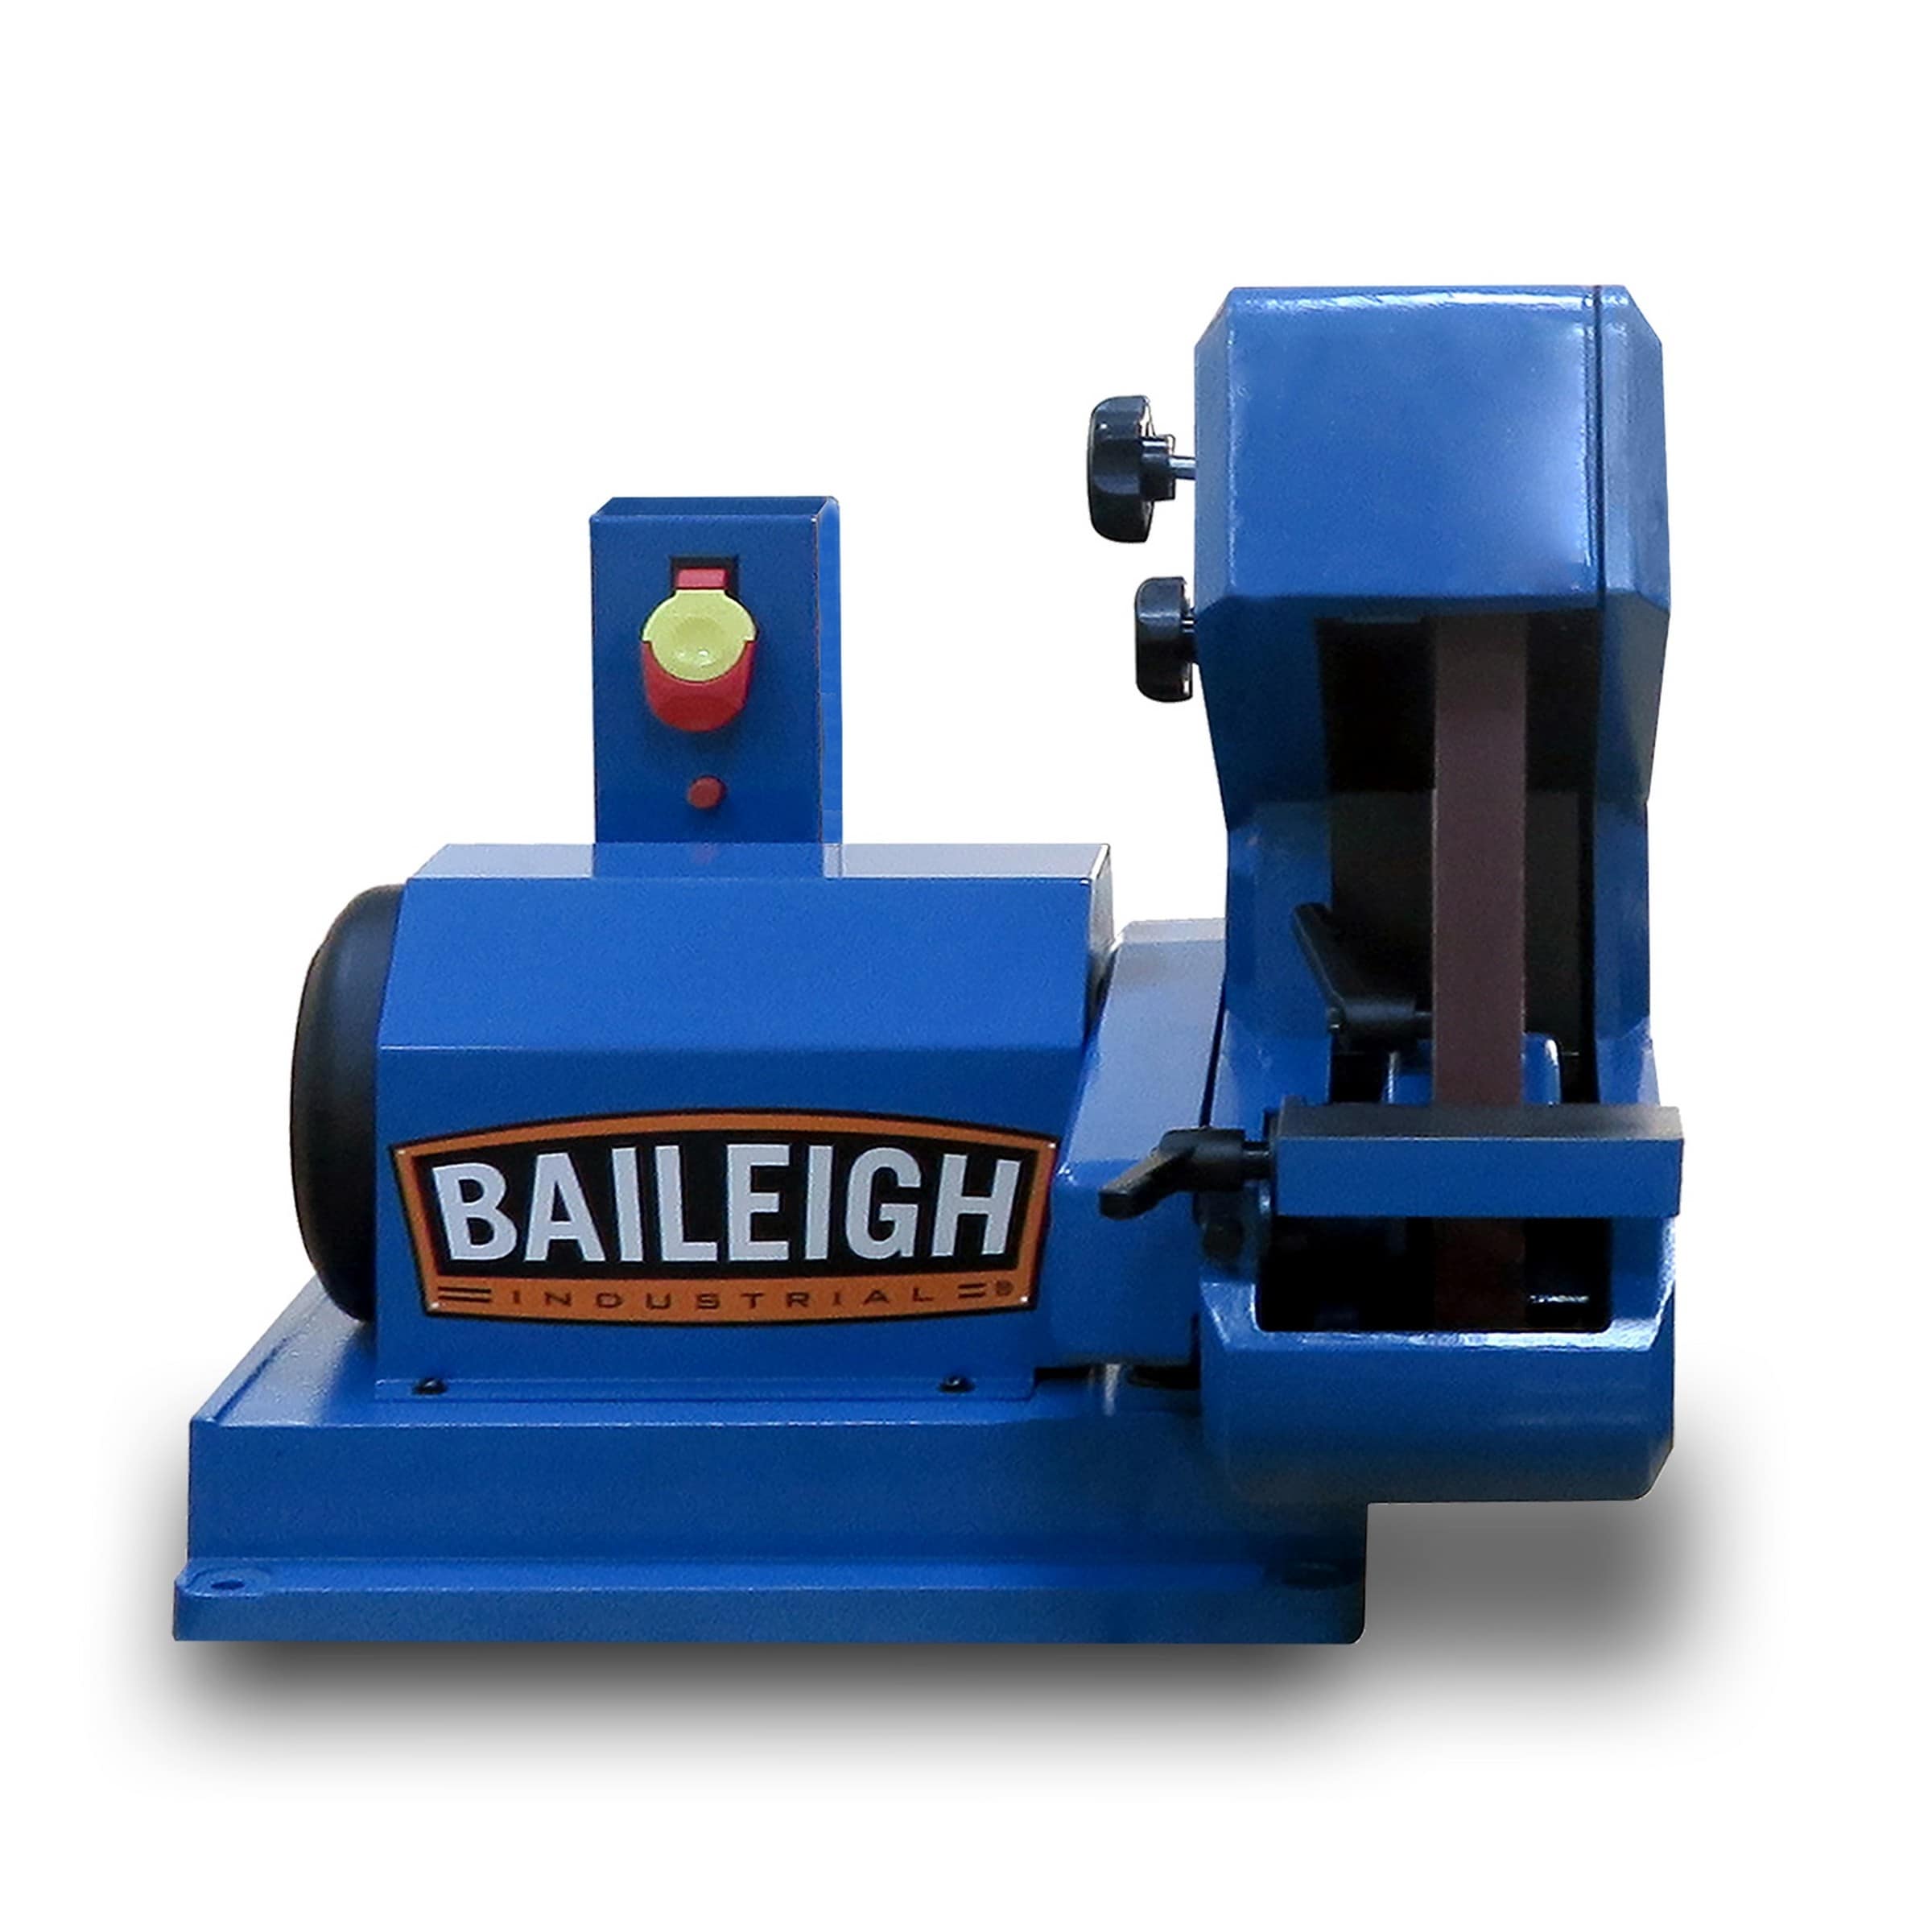 Baileigh Industrial 1227892